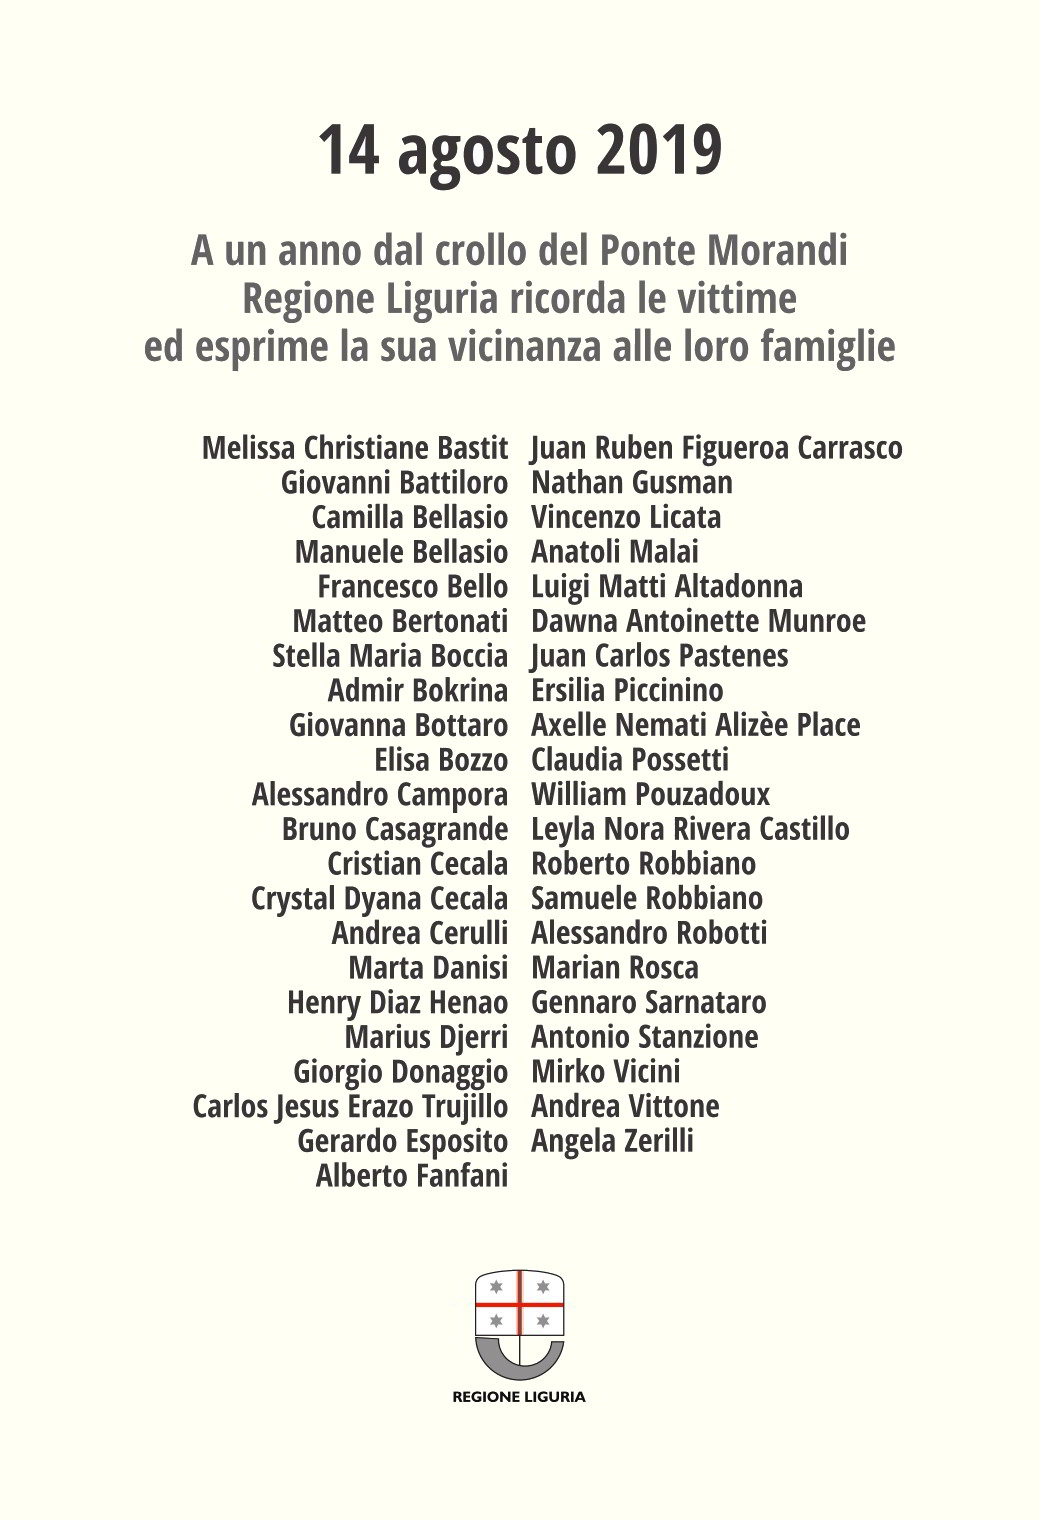 Commemorazione Regione Liguria vittime Ponte Morandi 14agosto2019